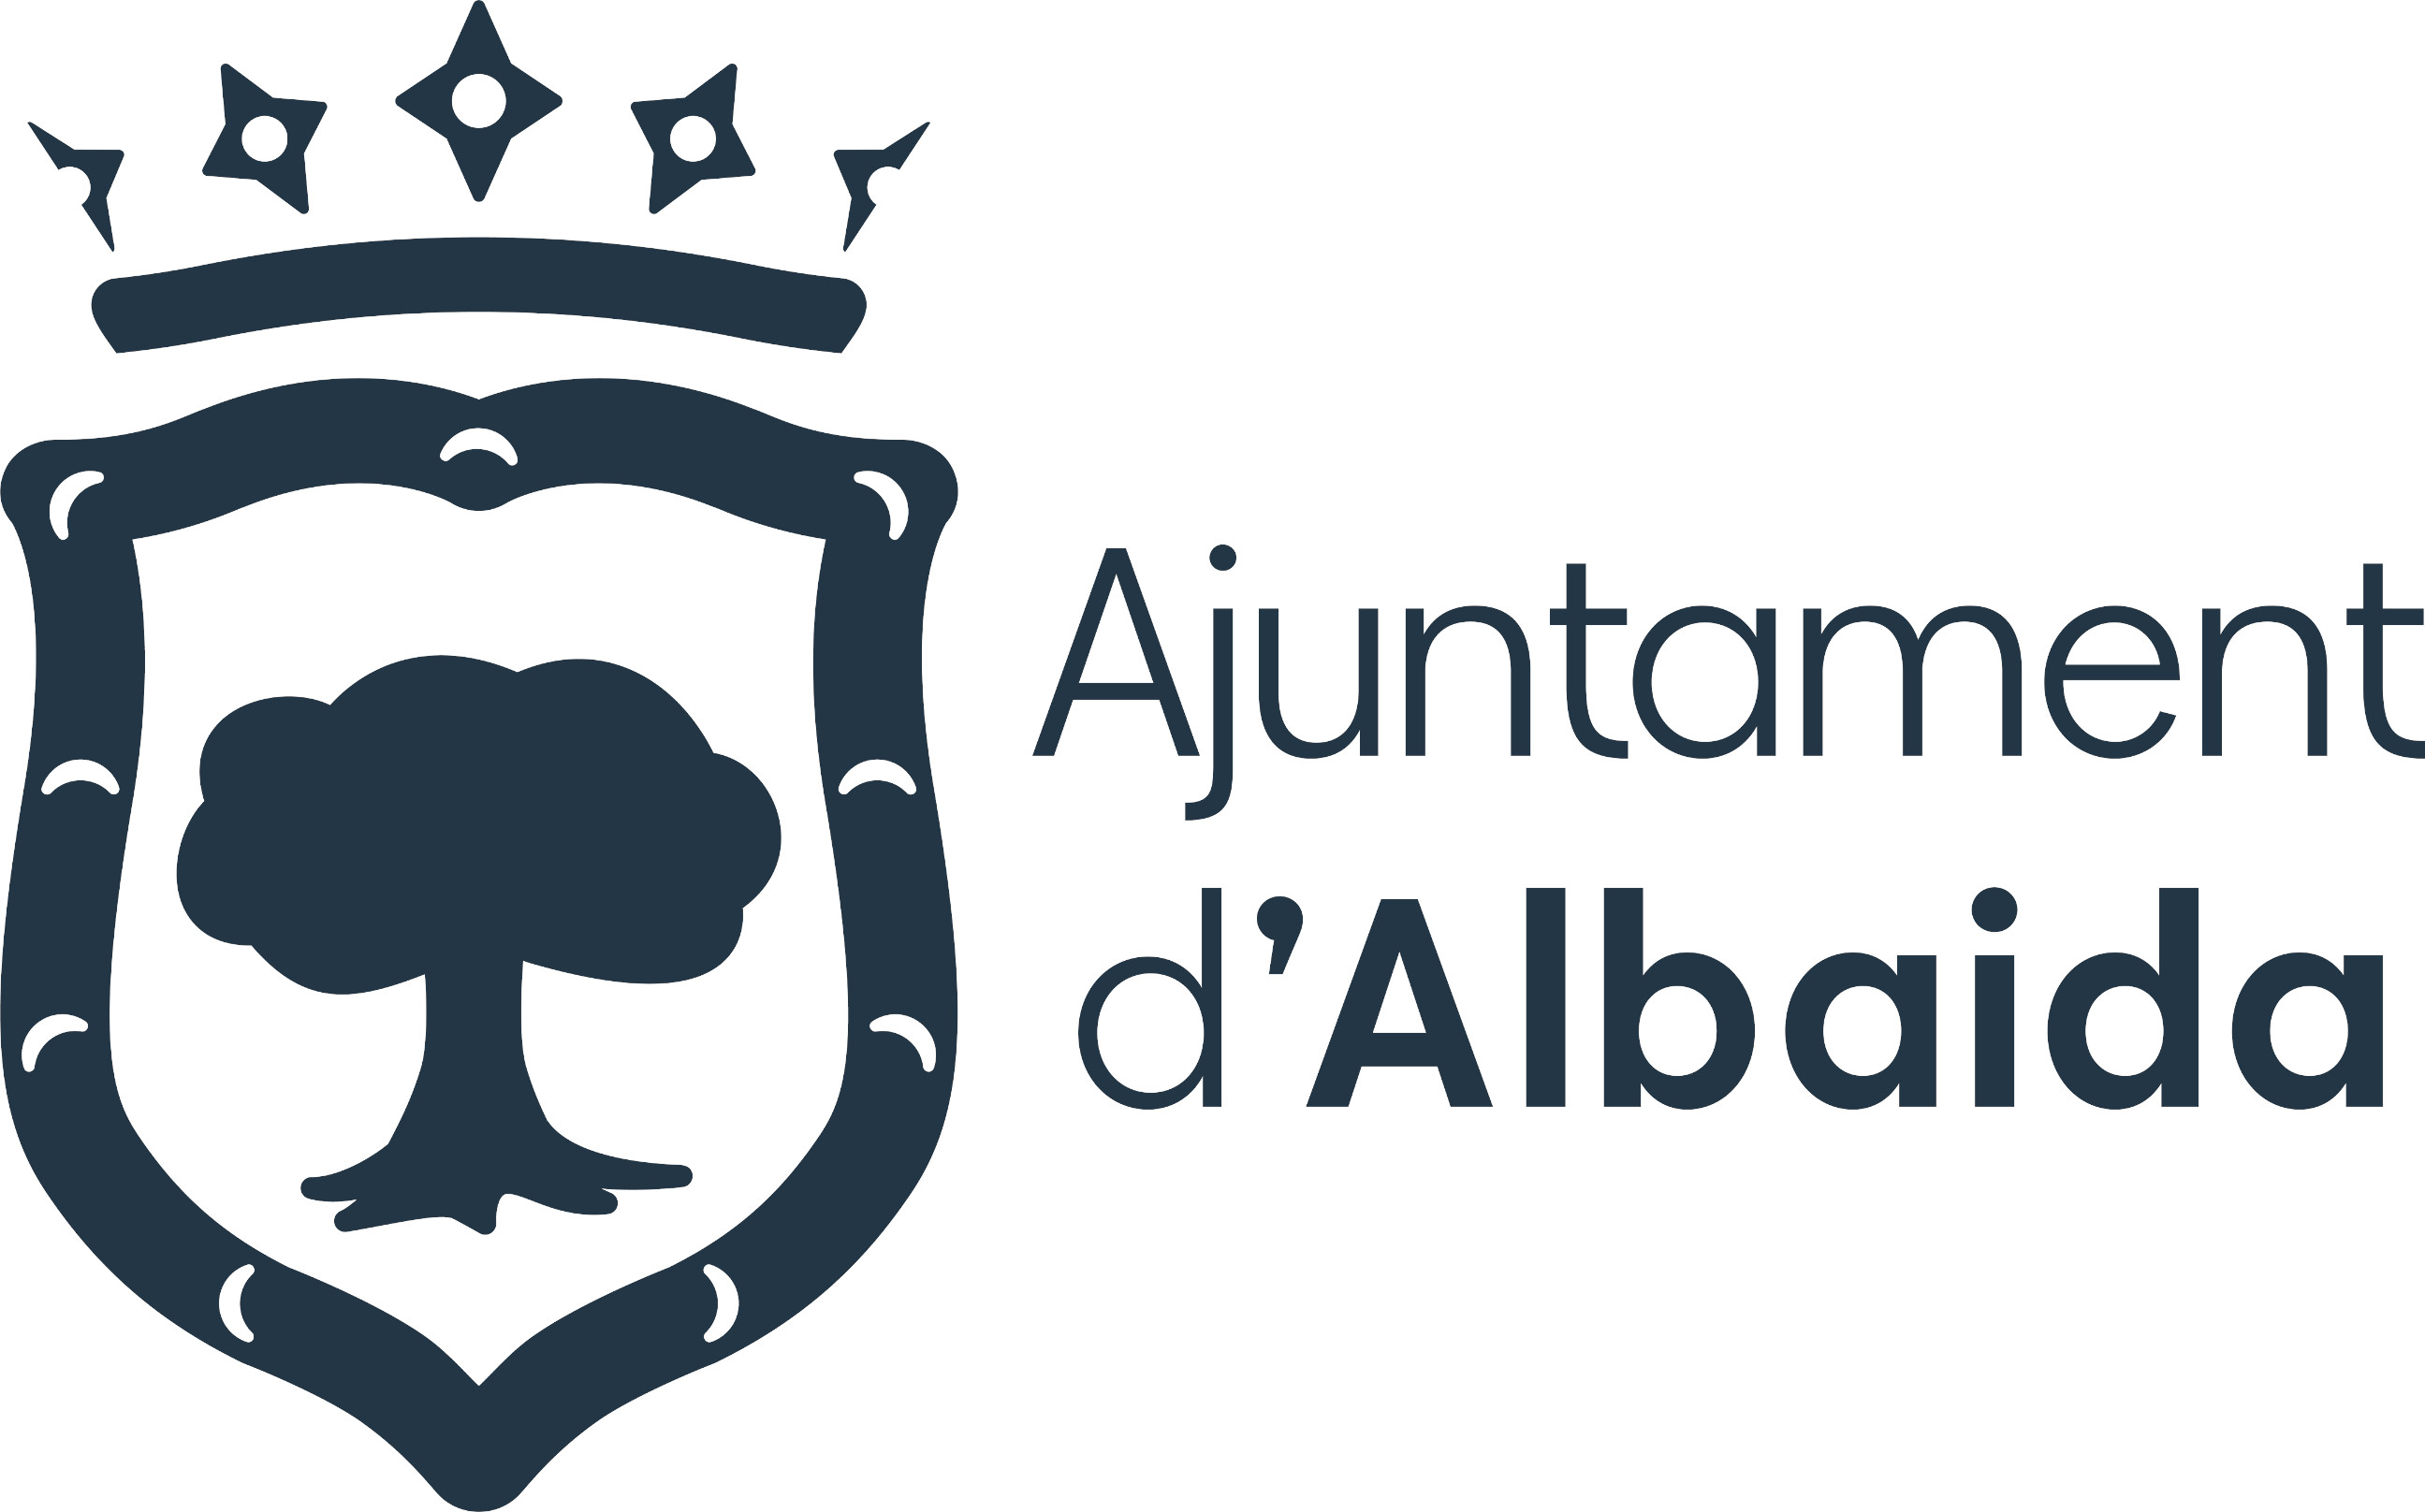 Ajuntament d'Albaida